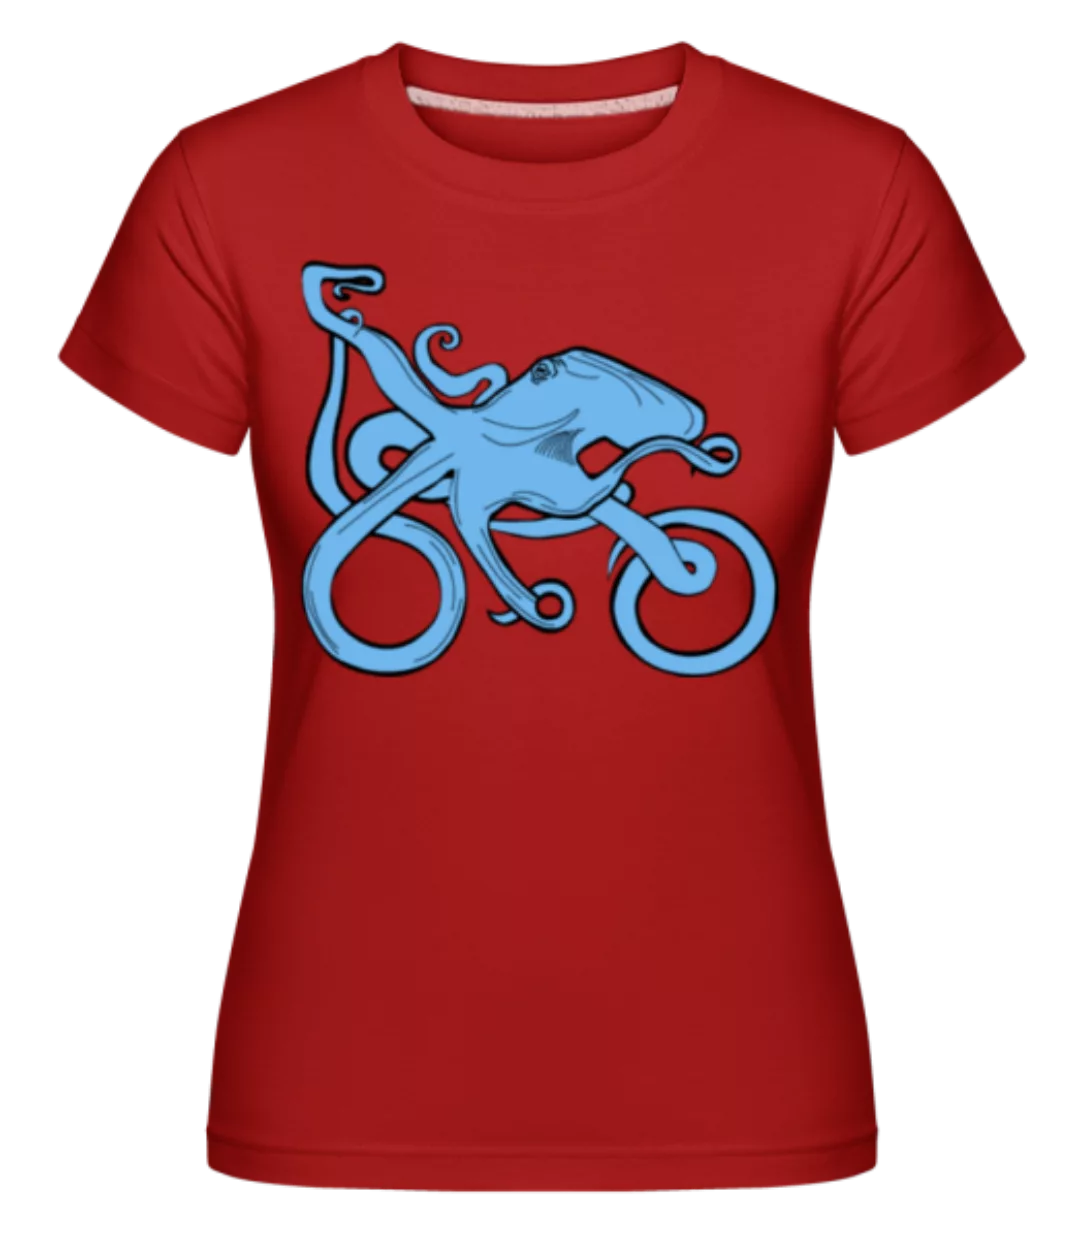 Motorrrad Oktopus · Shirtinator Frauen T-Shirt günstig online kaufen